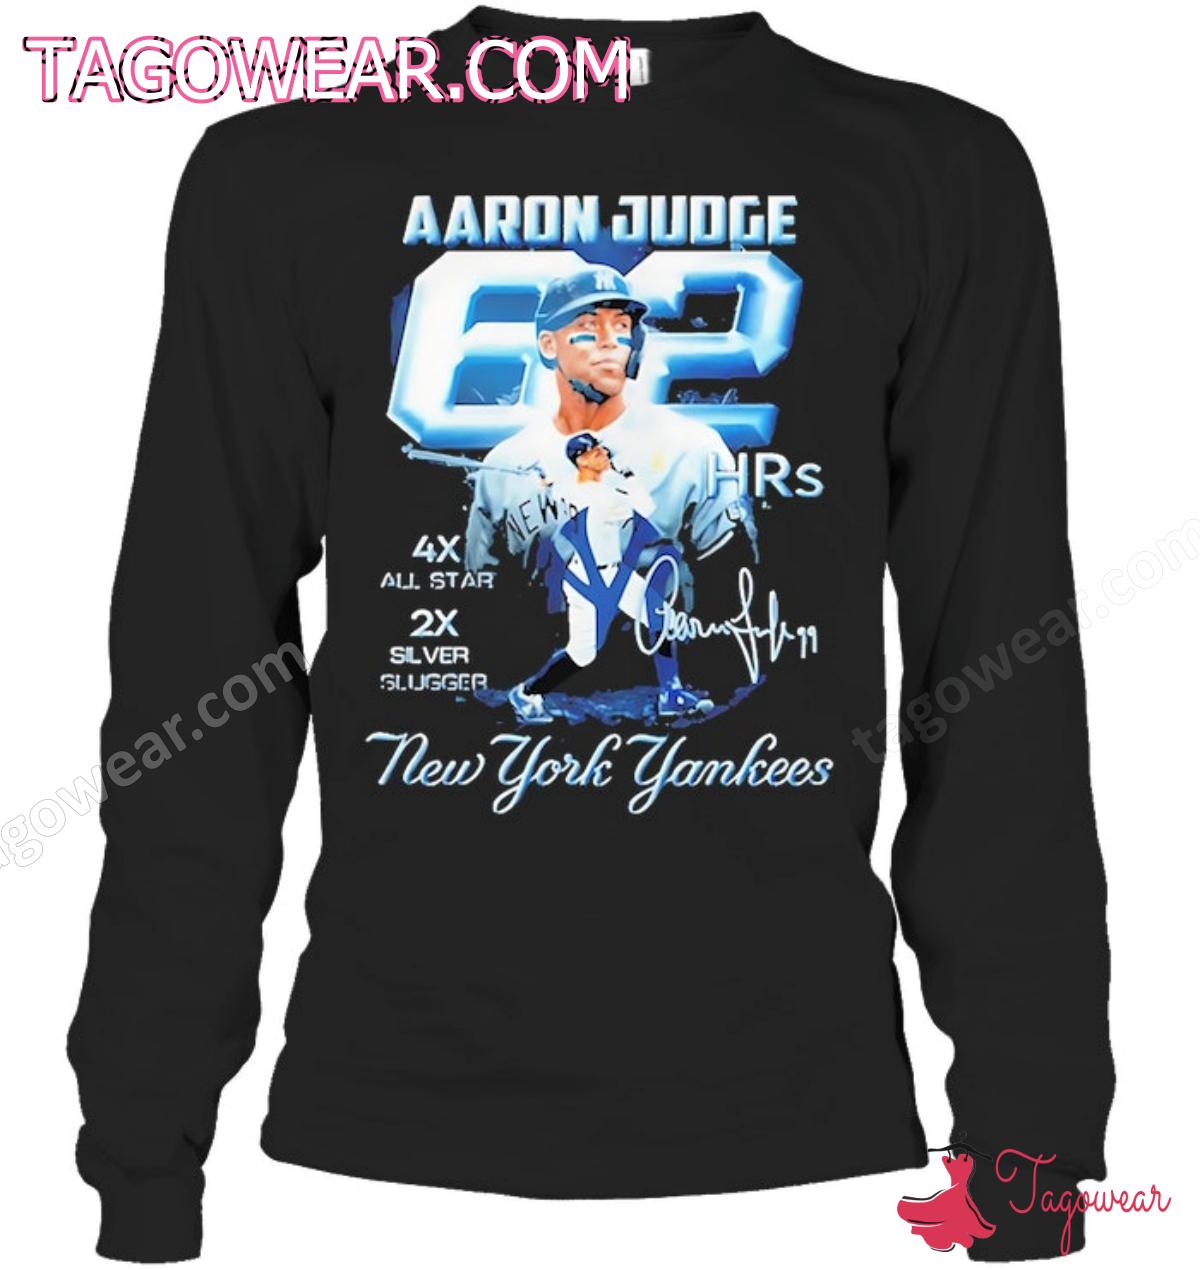 Aaron Judge 62 New York Yankees Signature Shirt a